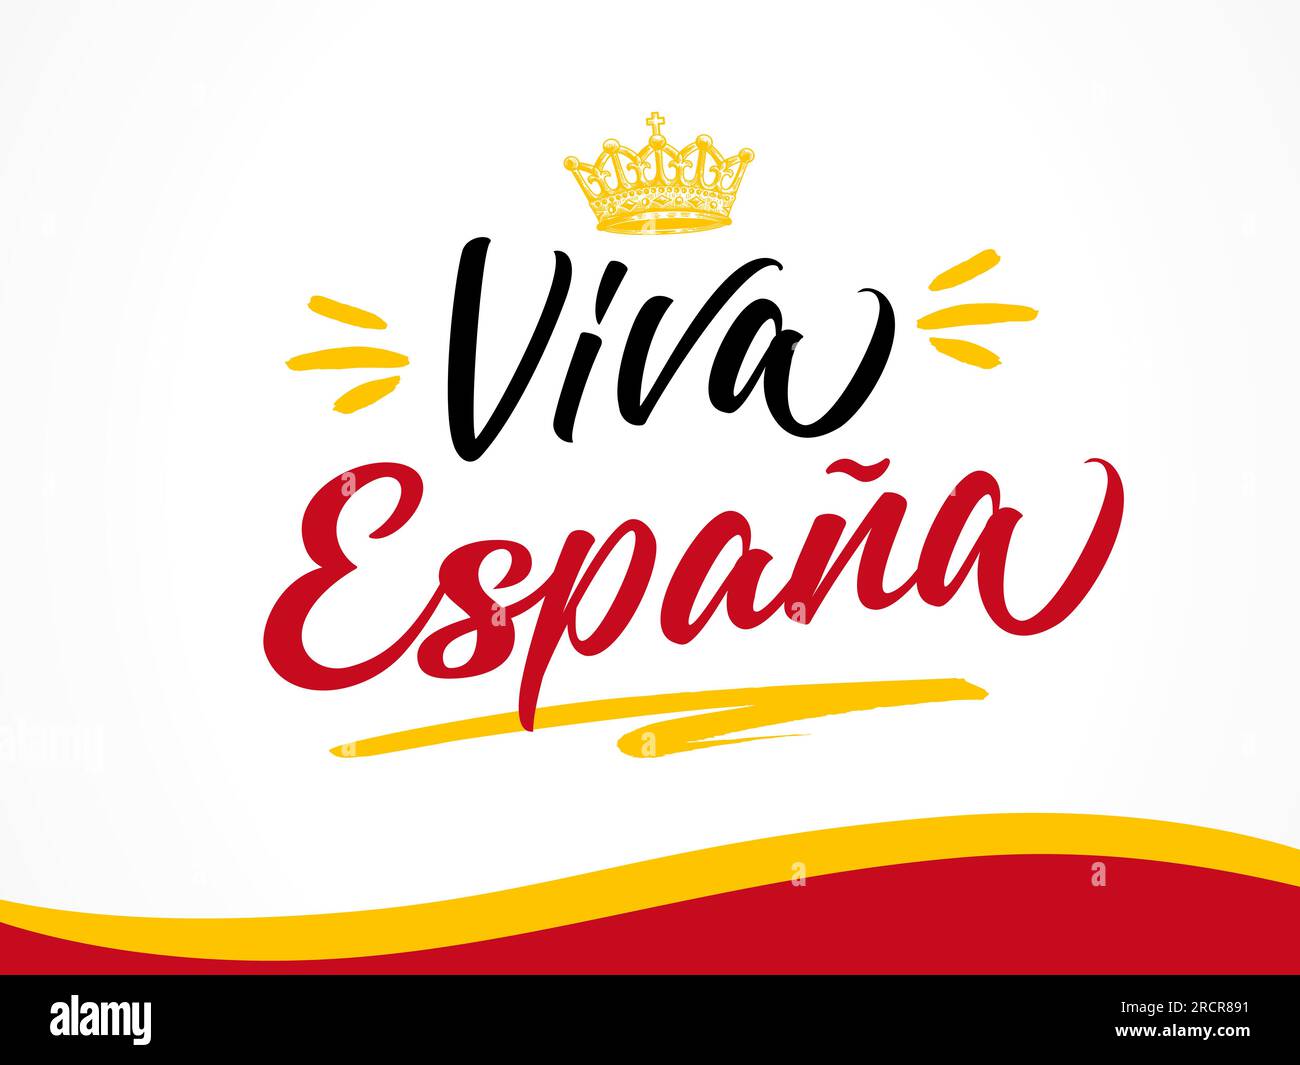 Die flagge von spanien Stock-Vektorgrafiken kaufen - Seite 2 - Alamy